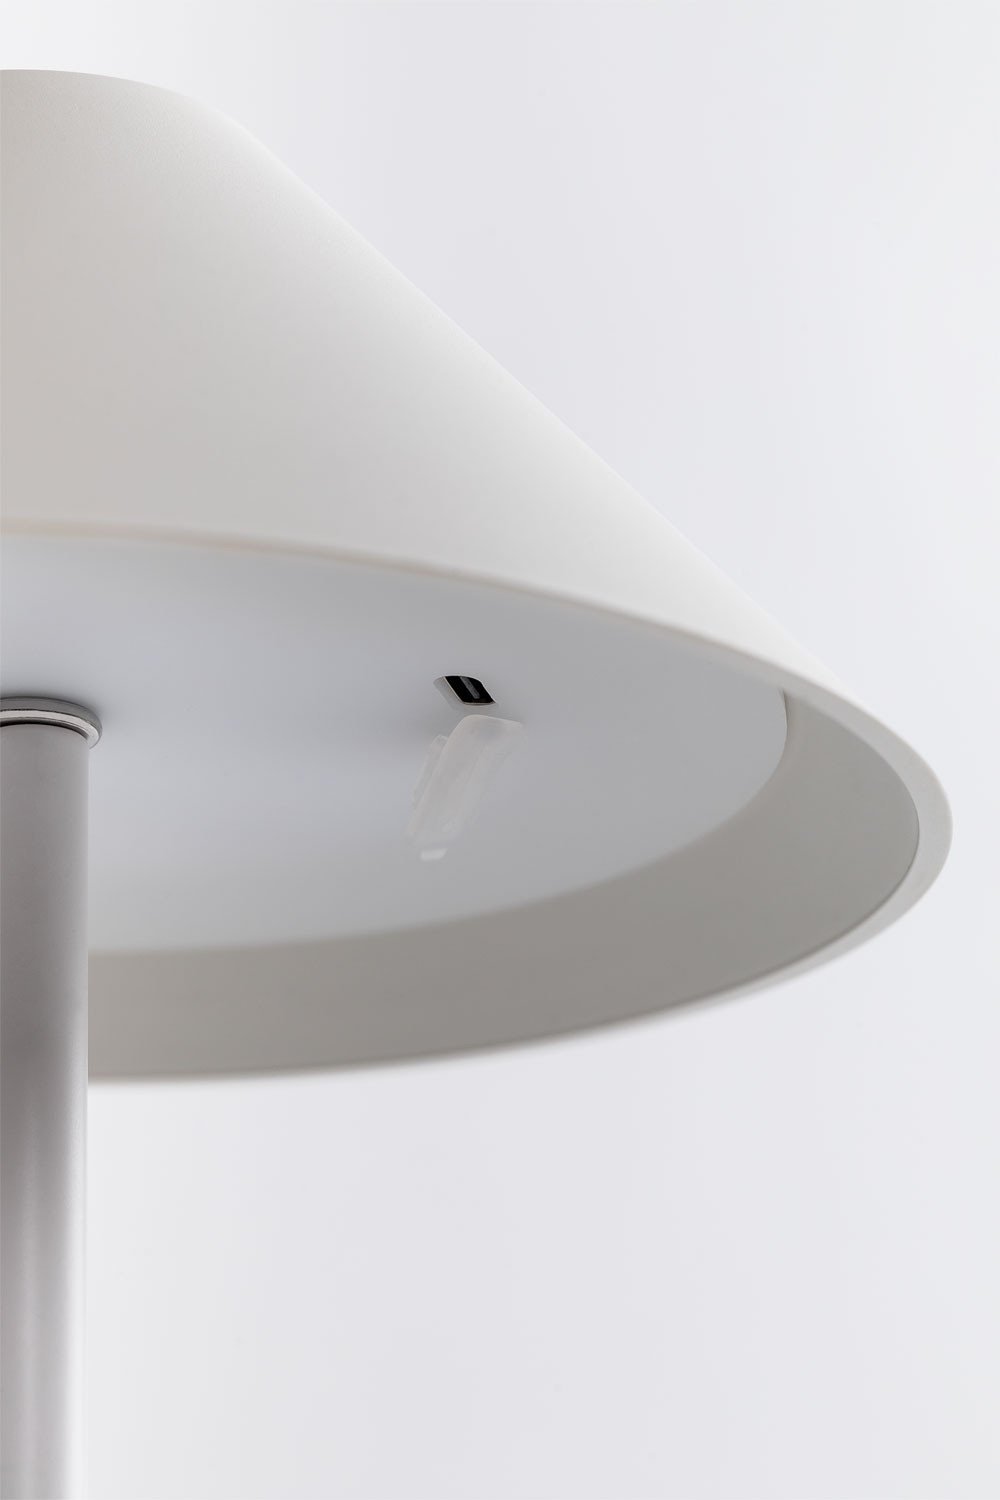 Lámpara de Mesa LED Inalámbrica para Exterior Melzu - SKLUM